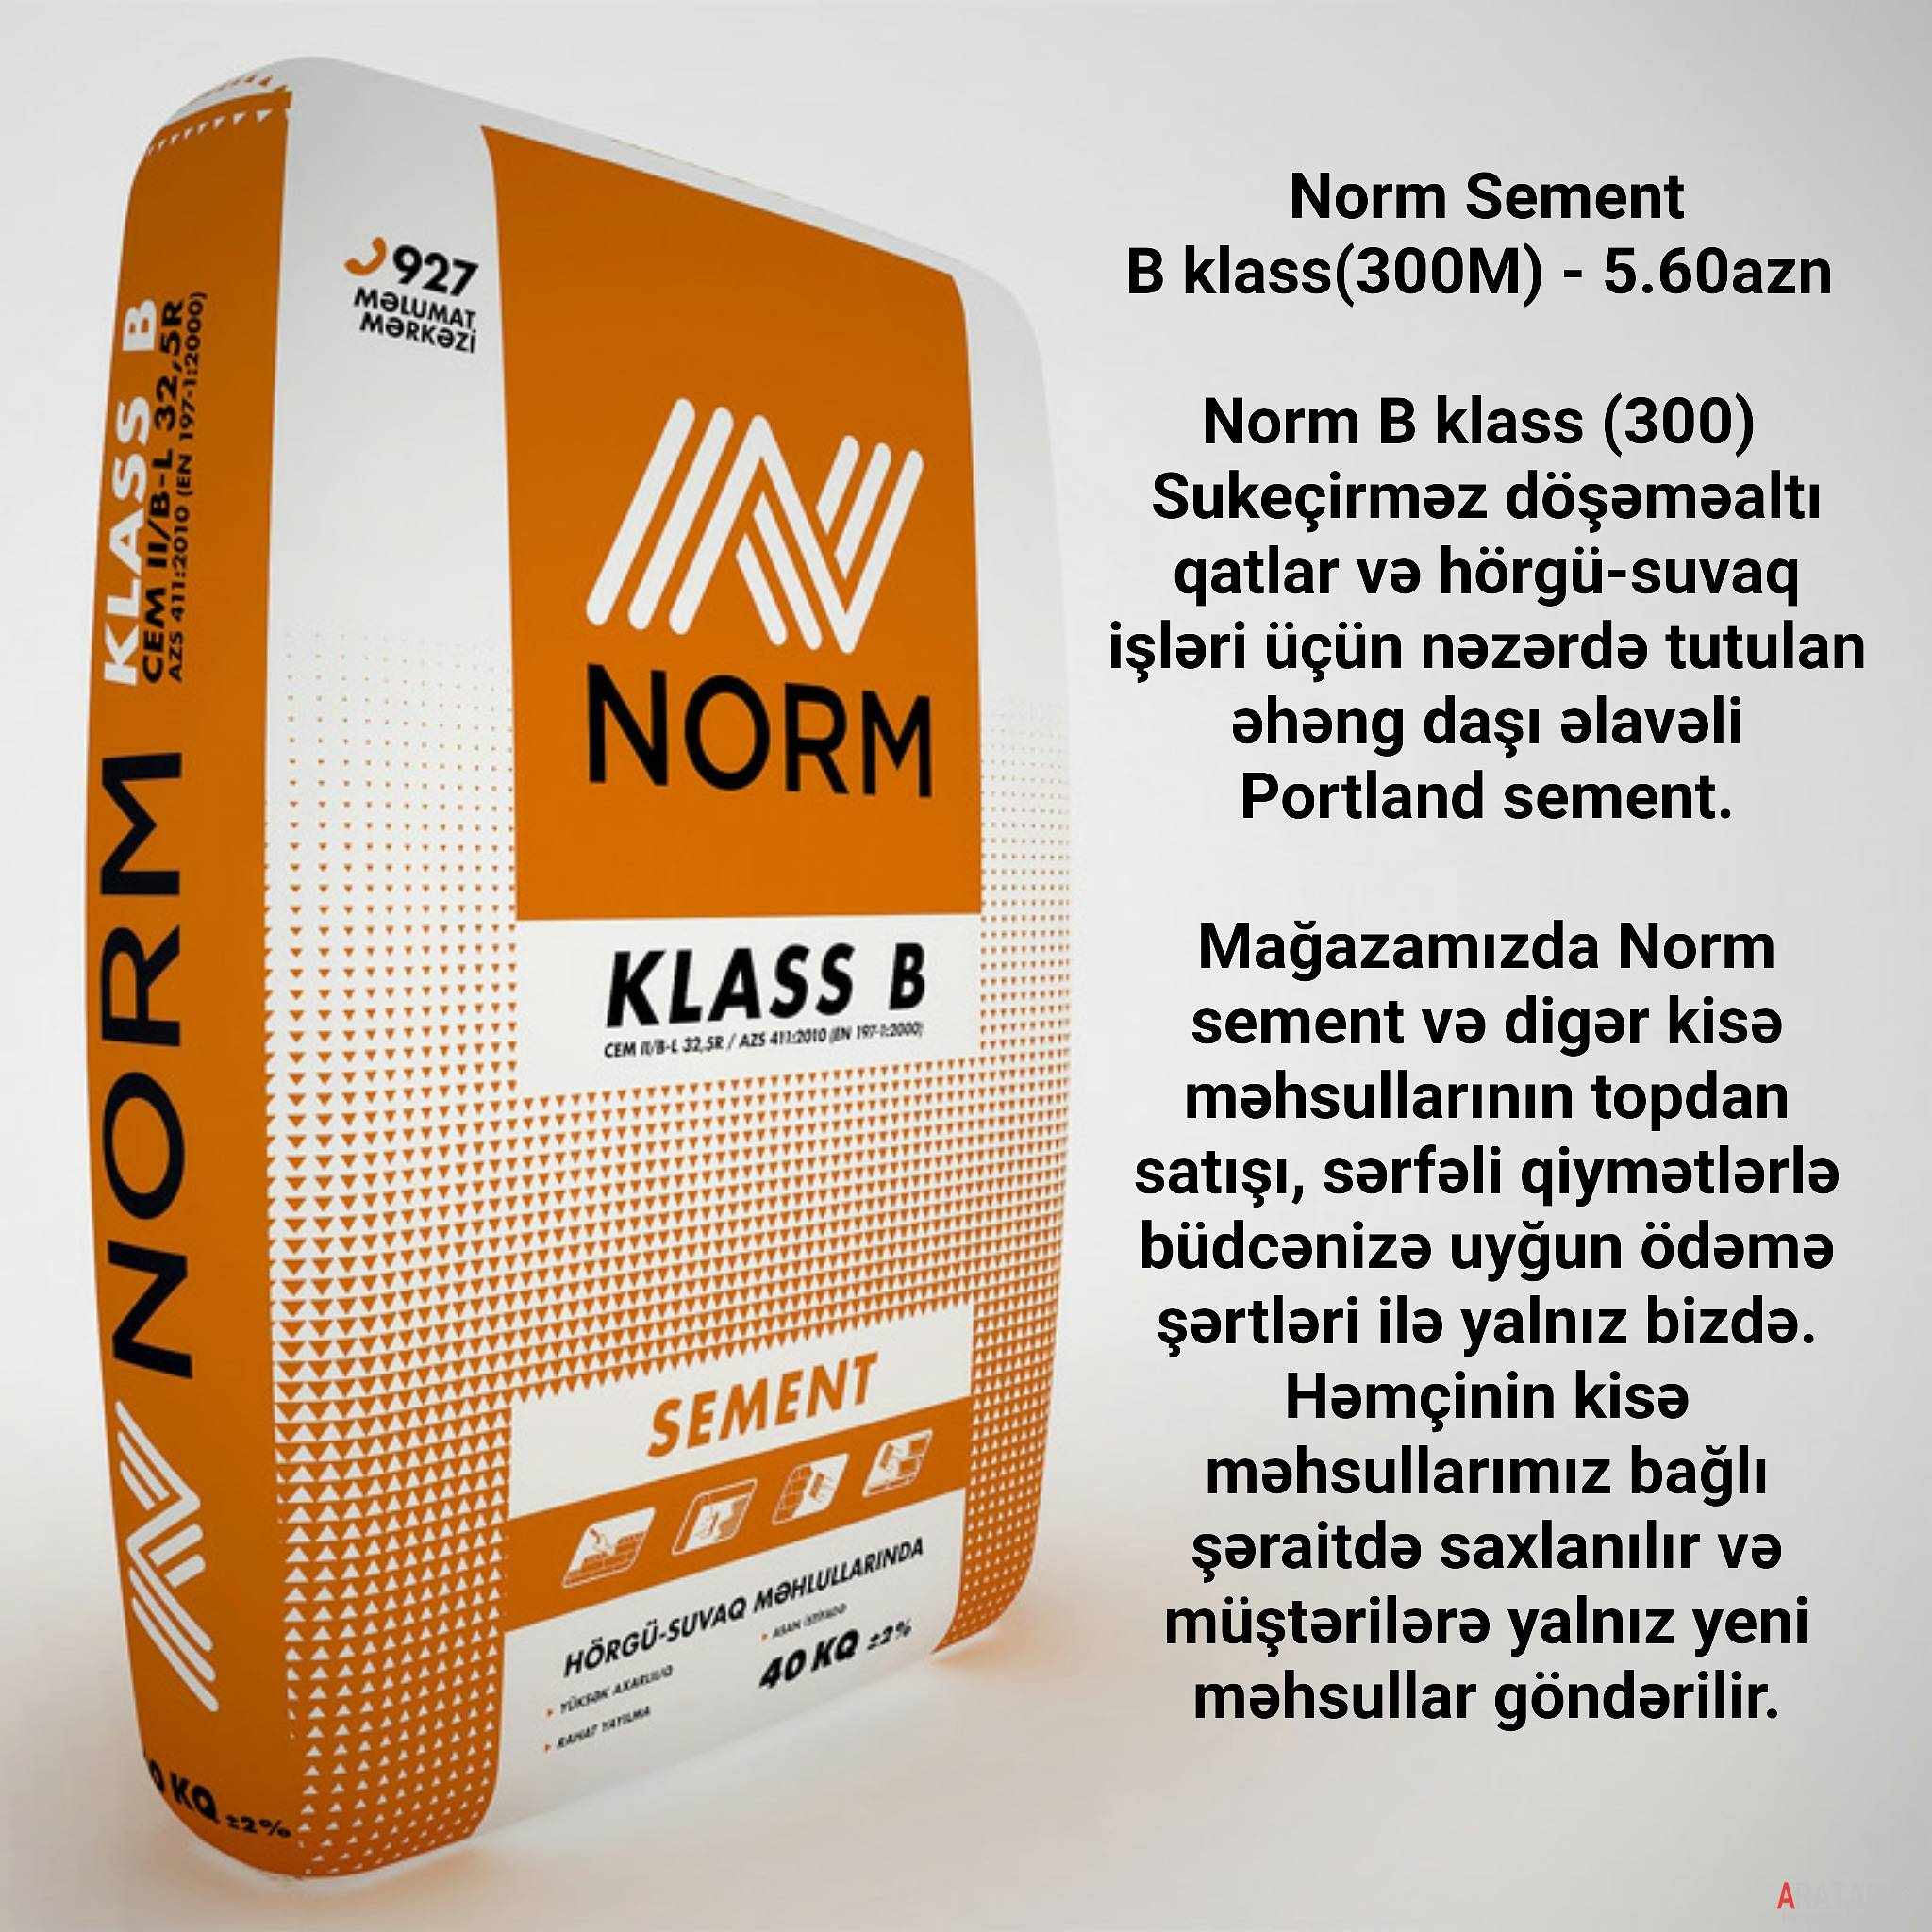 Norm Sement B klass(300M)